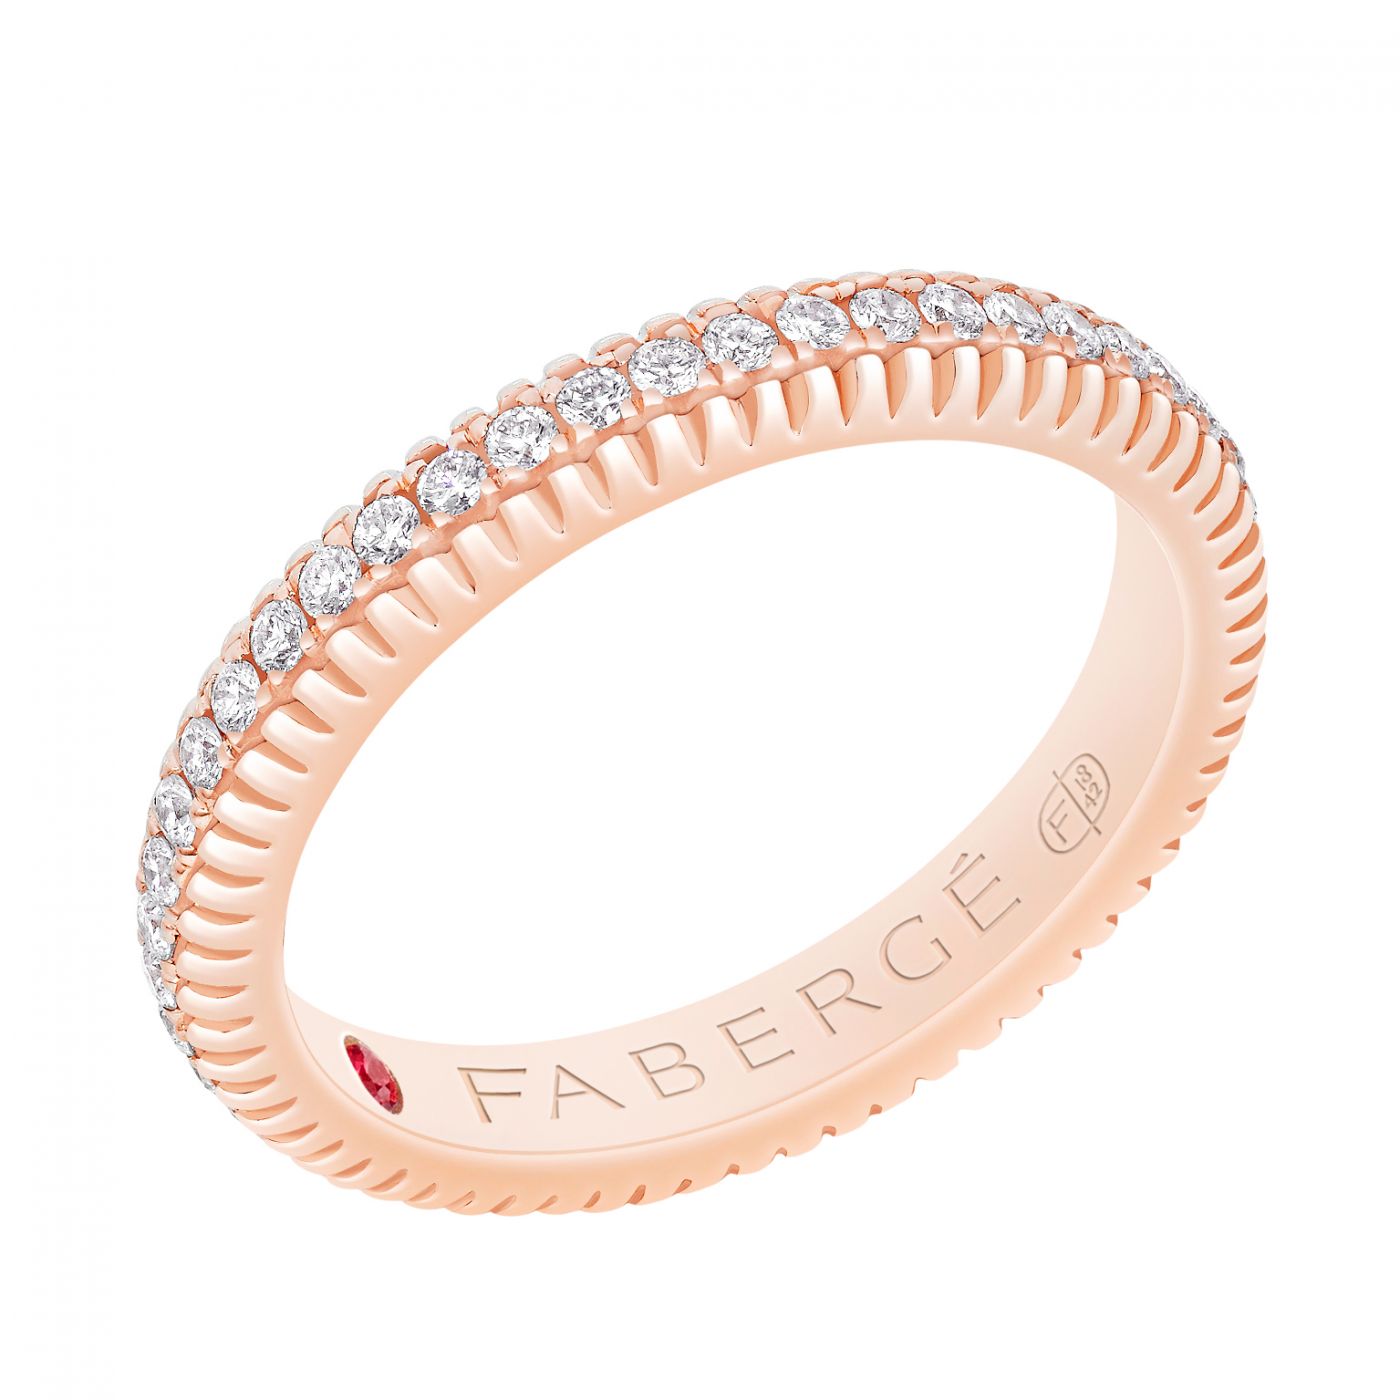 Inel Faberge din aur roz 18k cu diamante si rubin